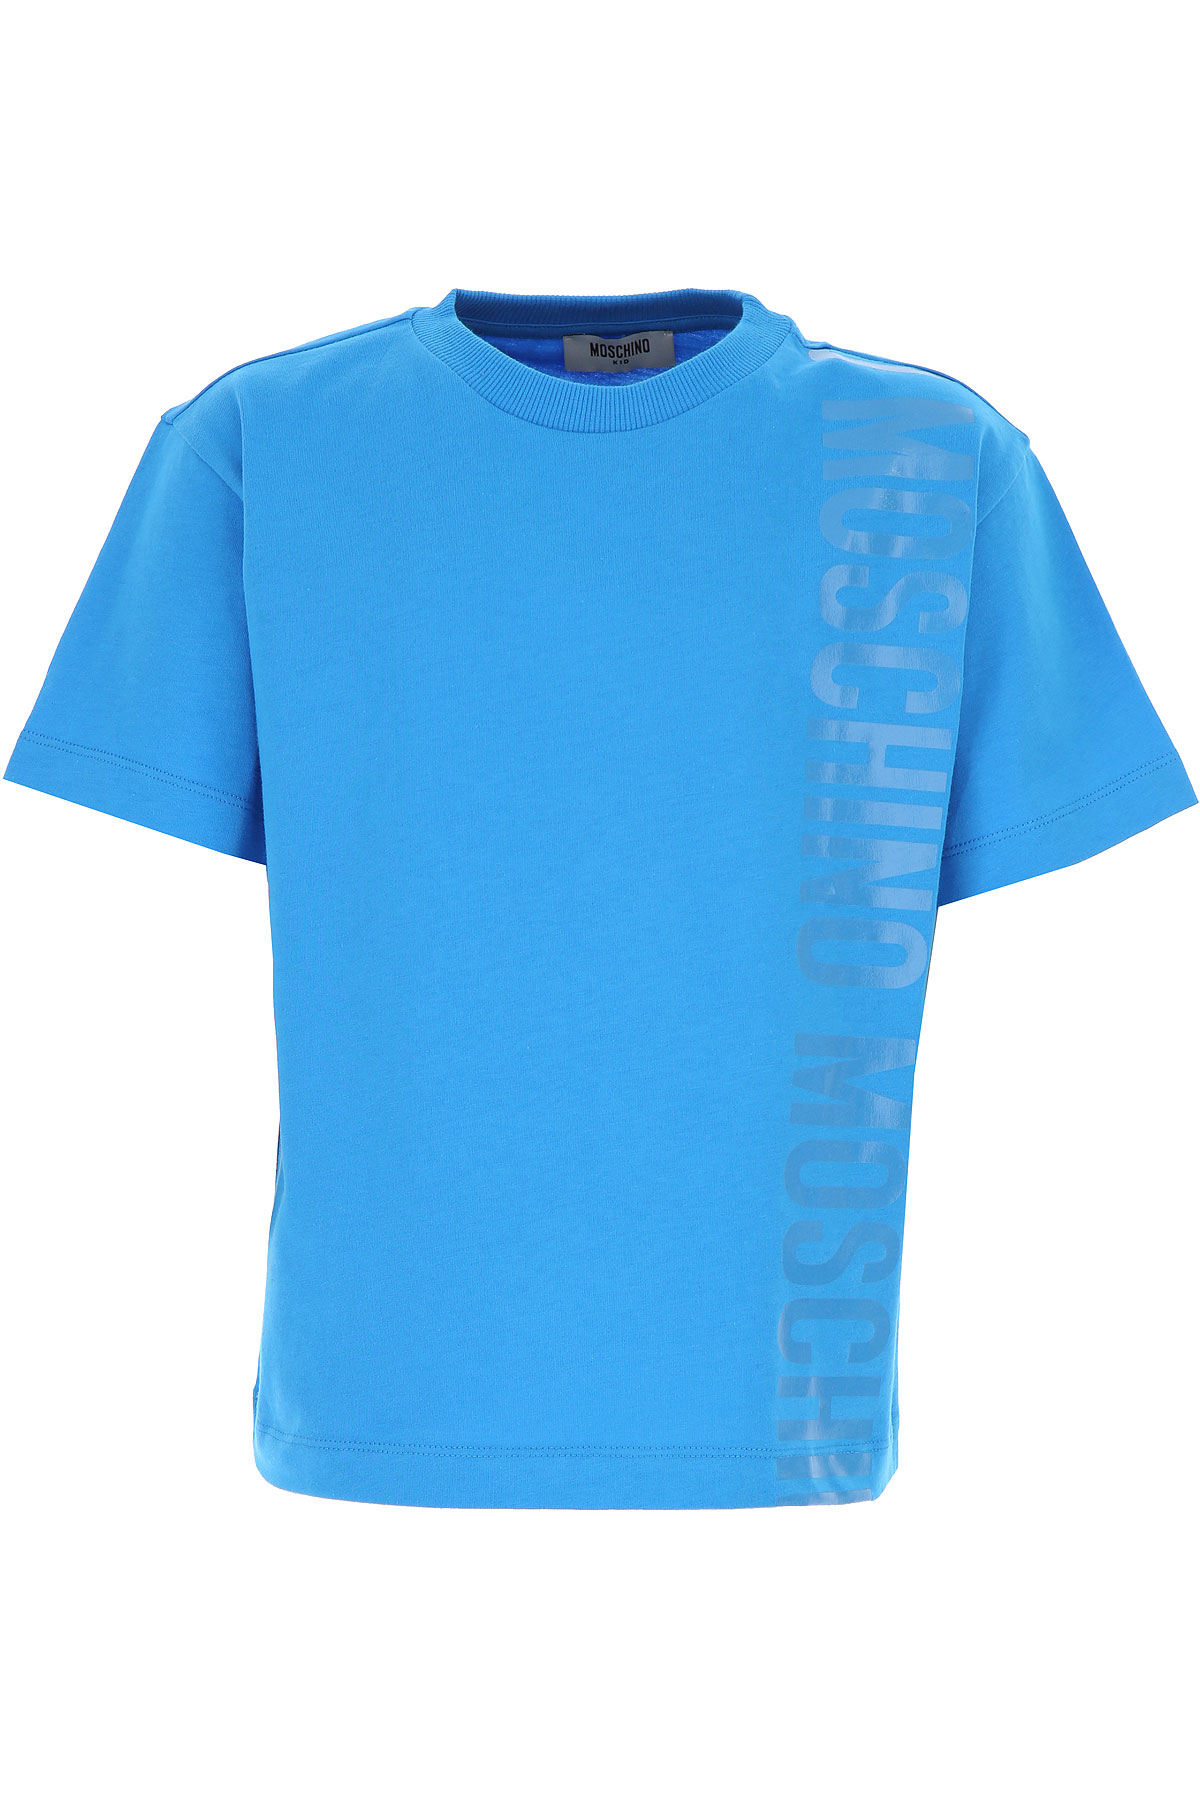 Moschino Kinder T-Shirt für Jungen Günstig im Outlet Sale, Blau, Baumwolle, 2017, 12Y 6Y